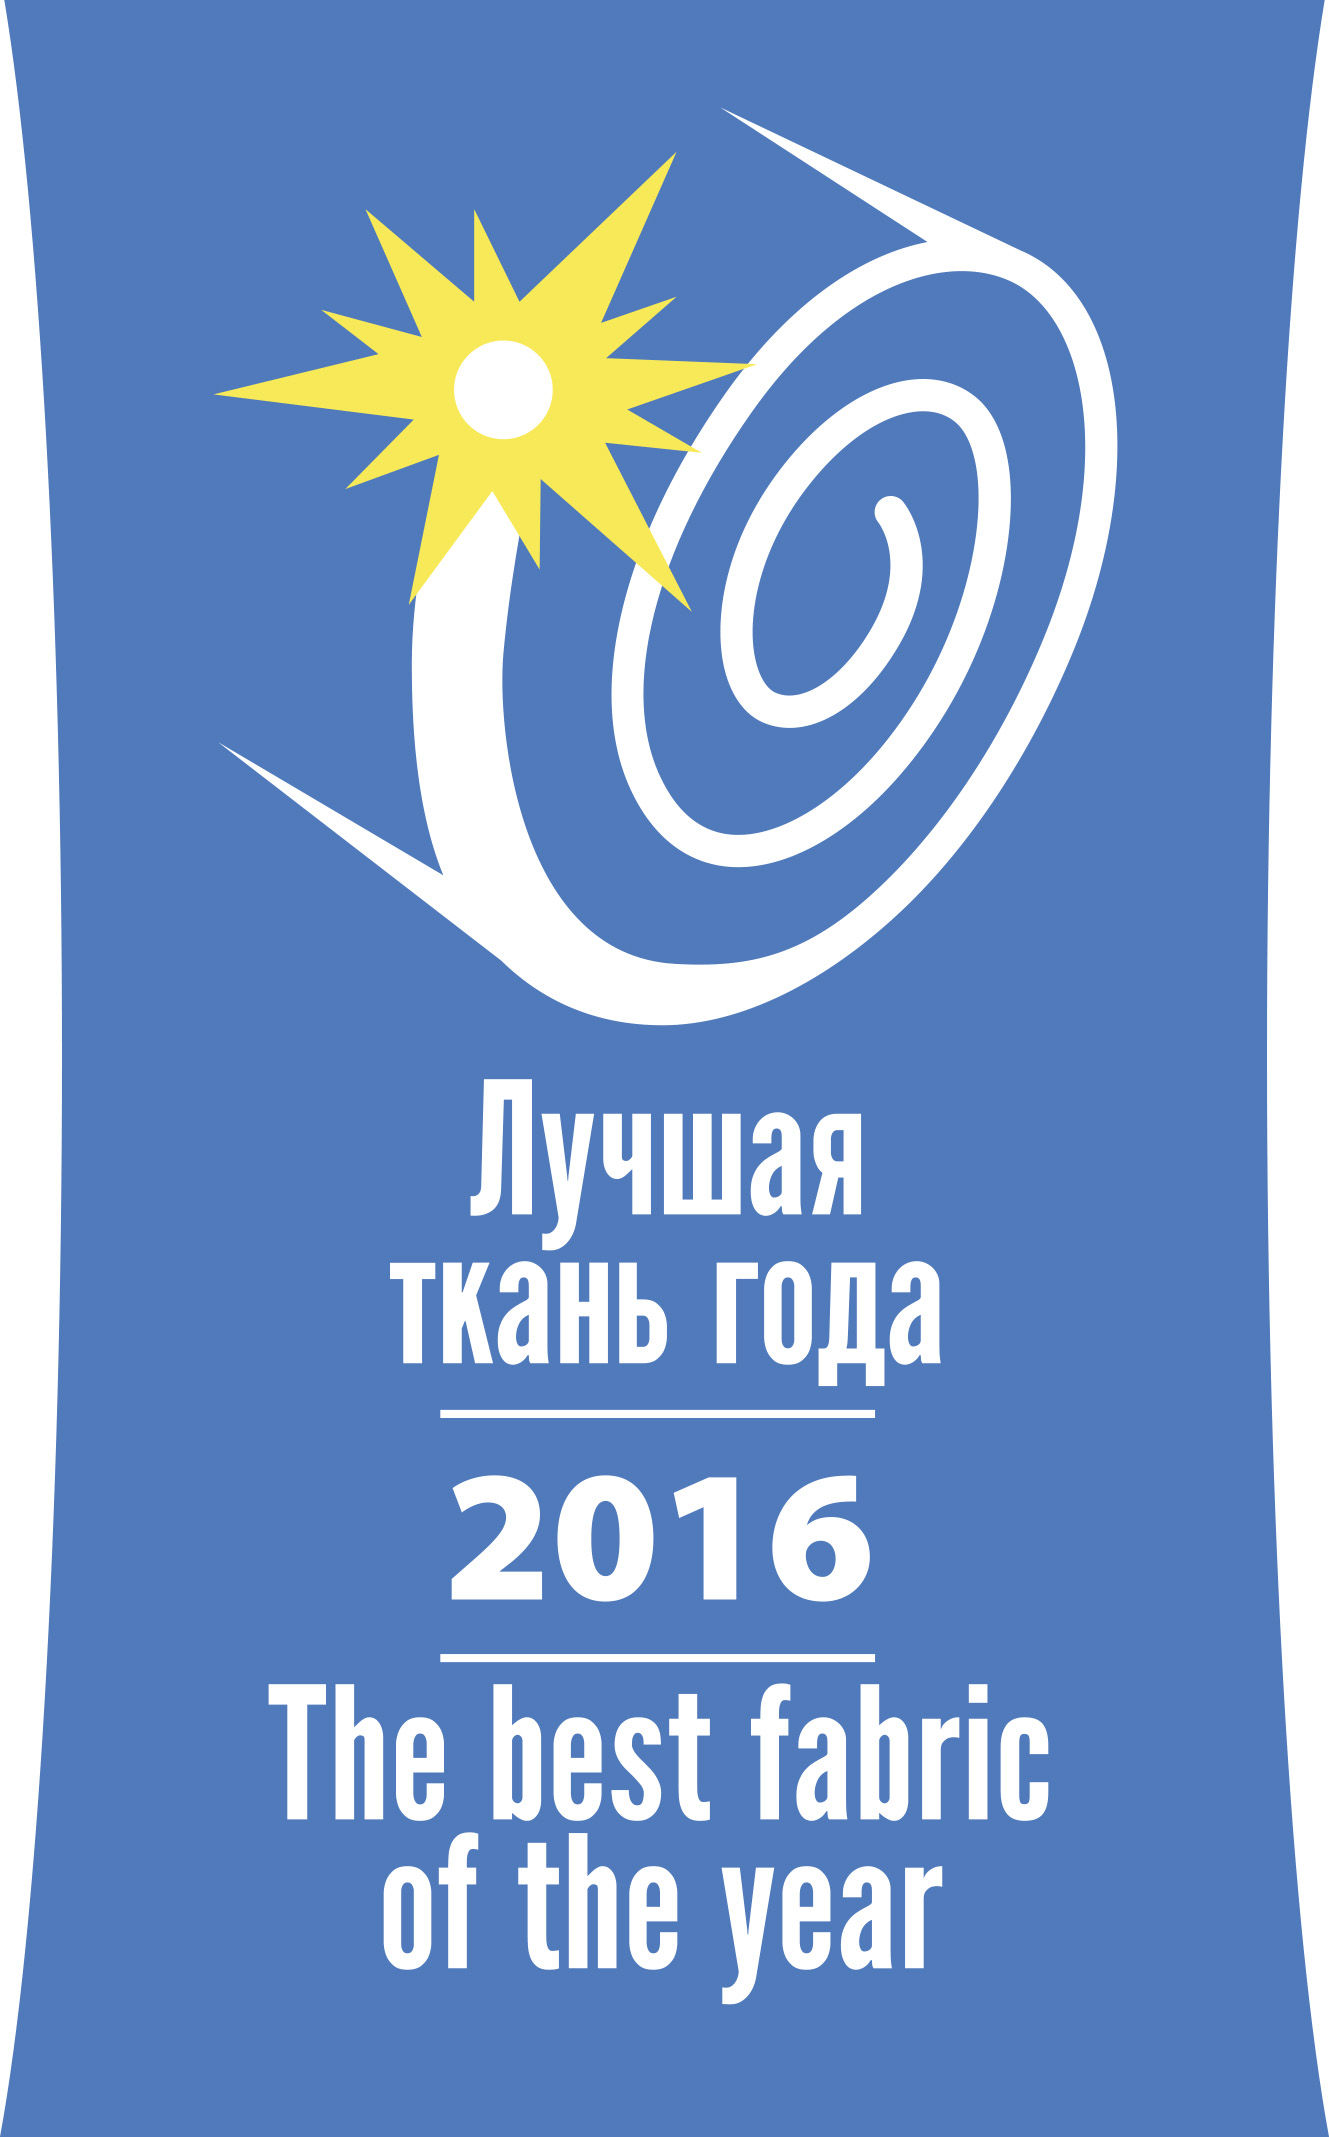 ЛЕГИОН 240 А - победитель конкурса "Лучшая ткань года"